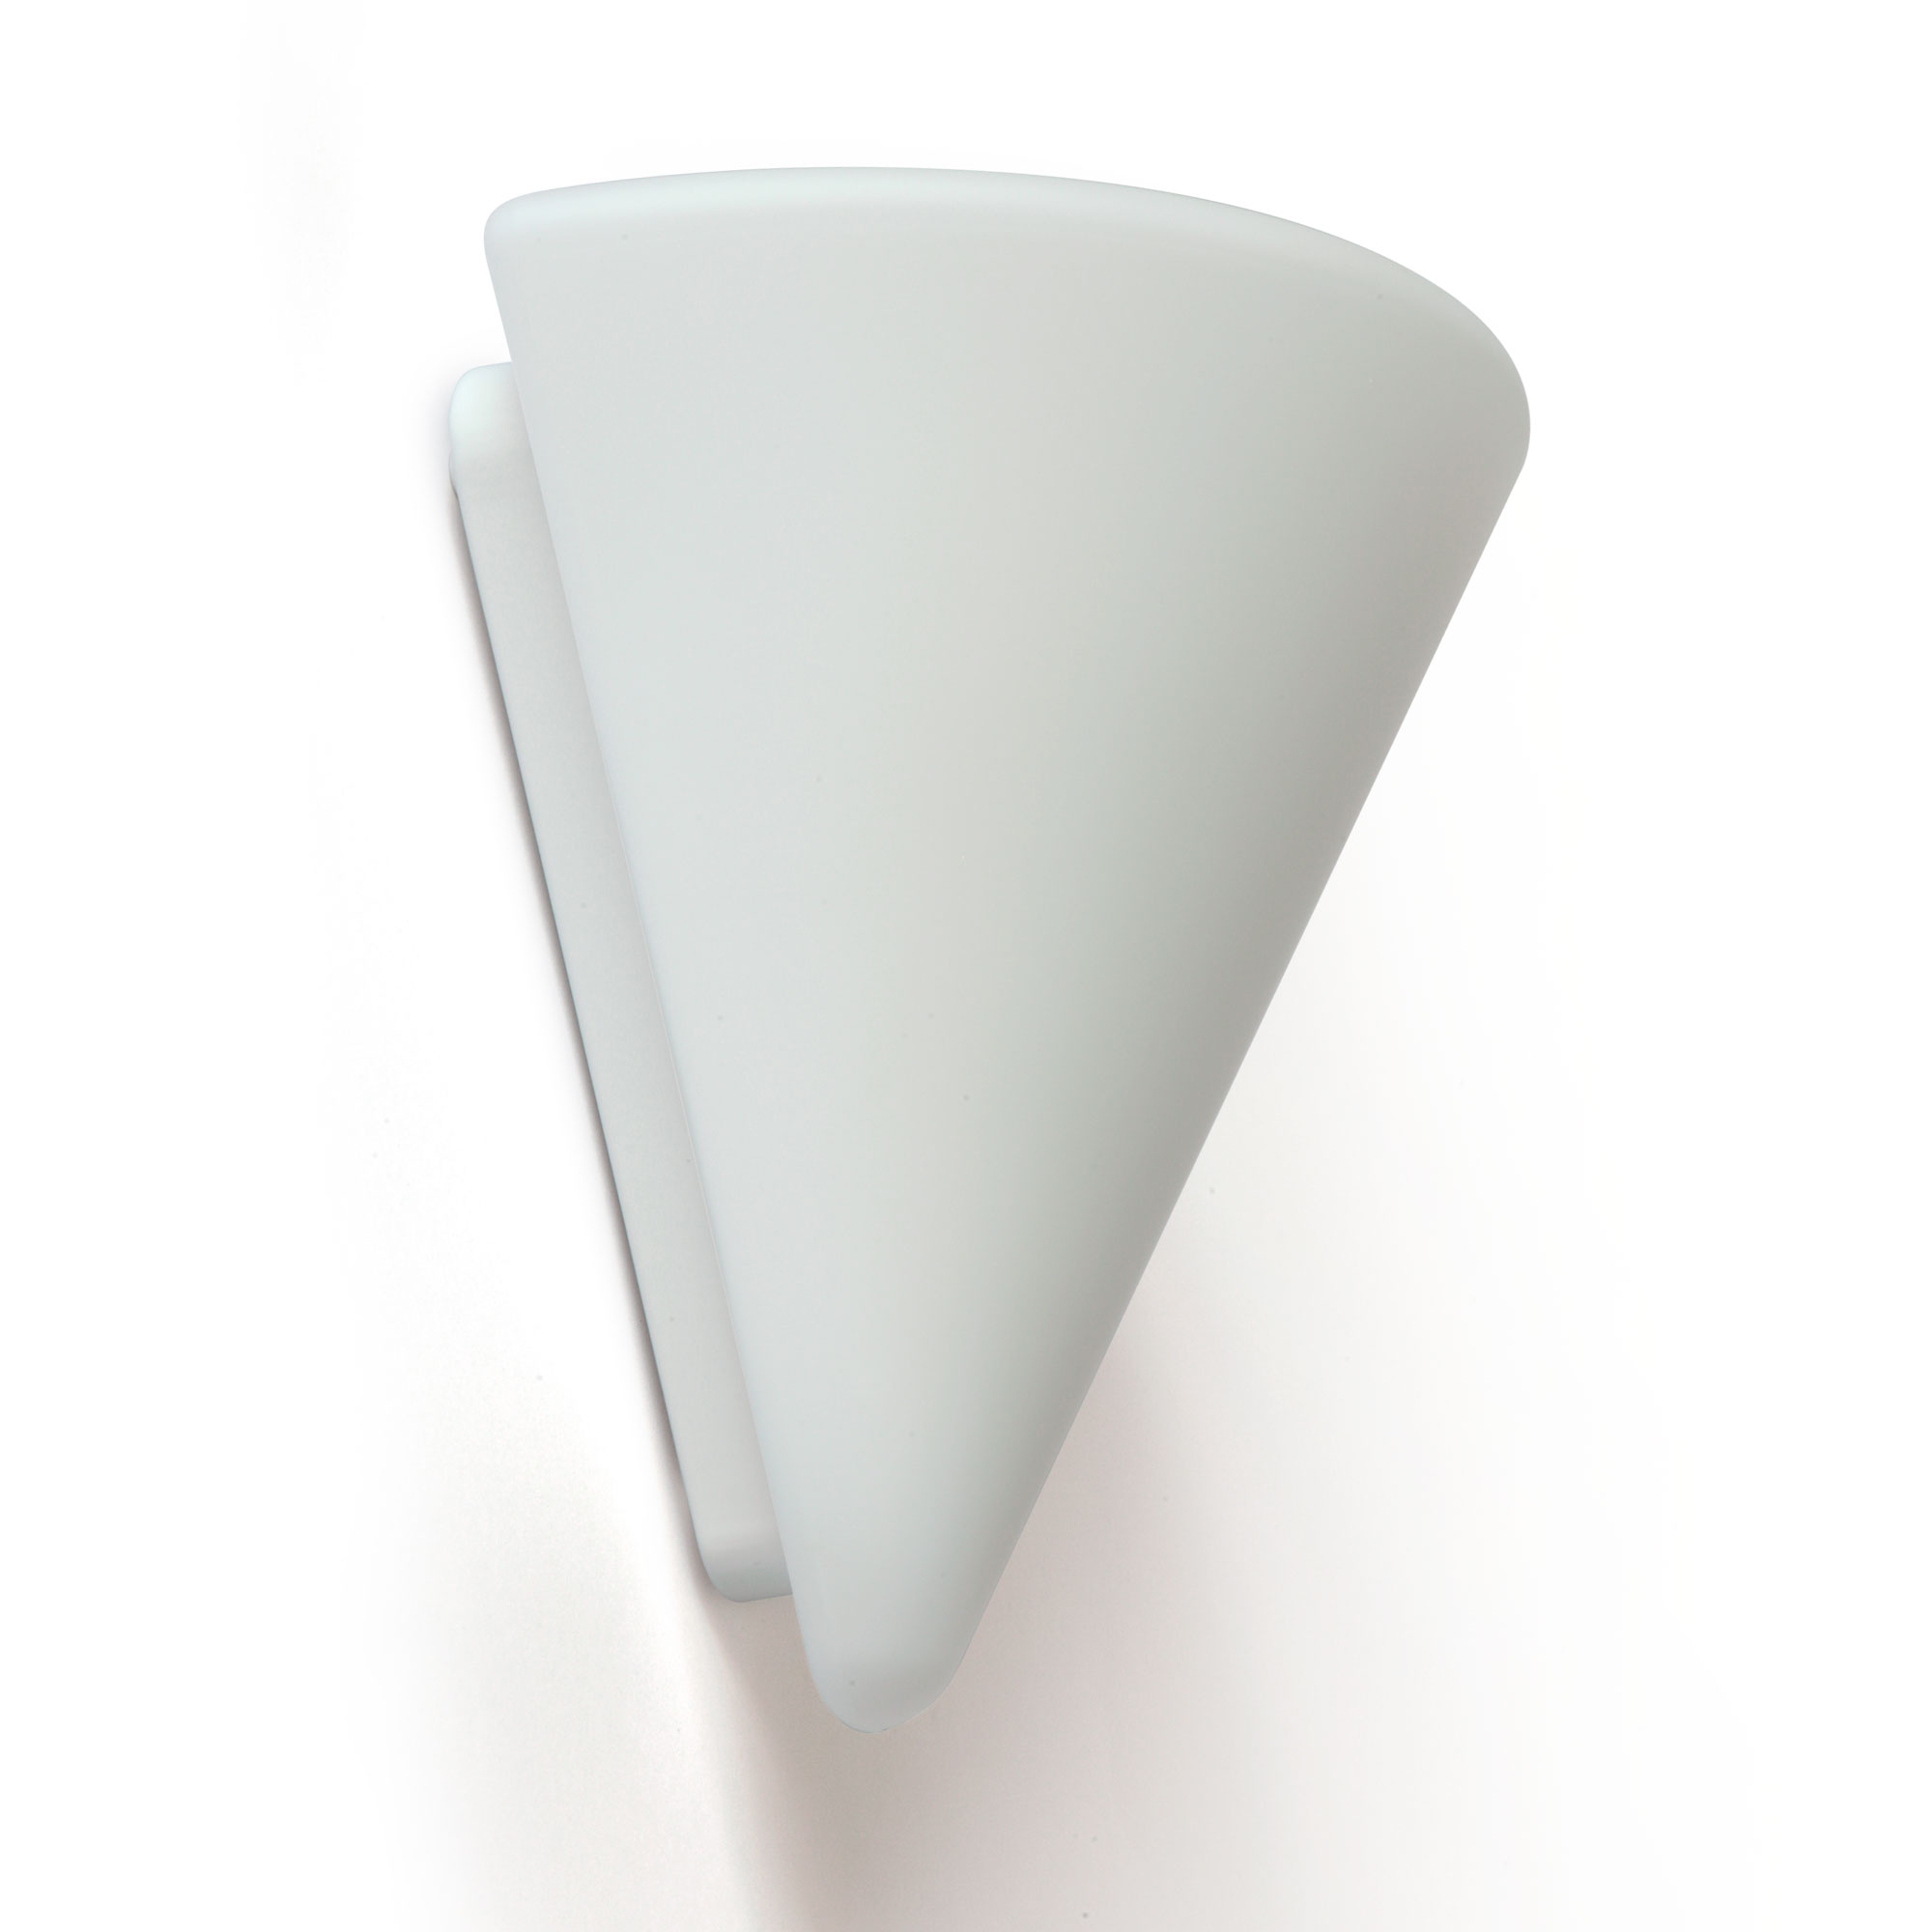 Halbkegel-Wandleuchte NINA aus Opalglas: Die Halbkegel-Wandleuchte überzeugt mit elegantem, seidig-mattem Opalglas und großem Einsatzspektrum dank IP43